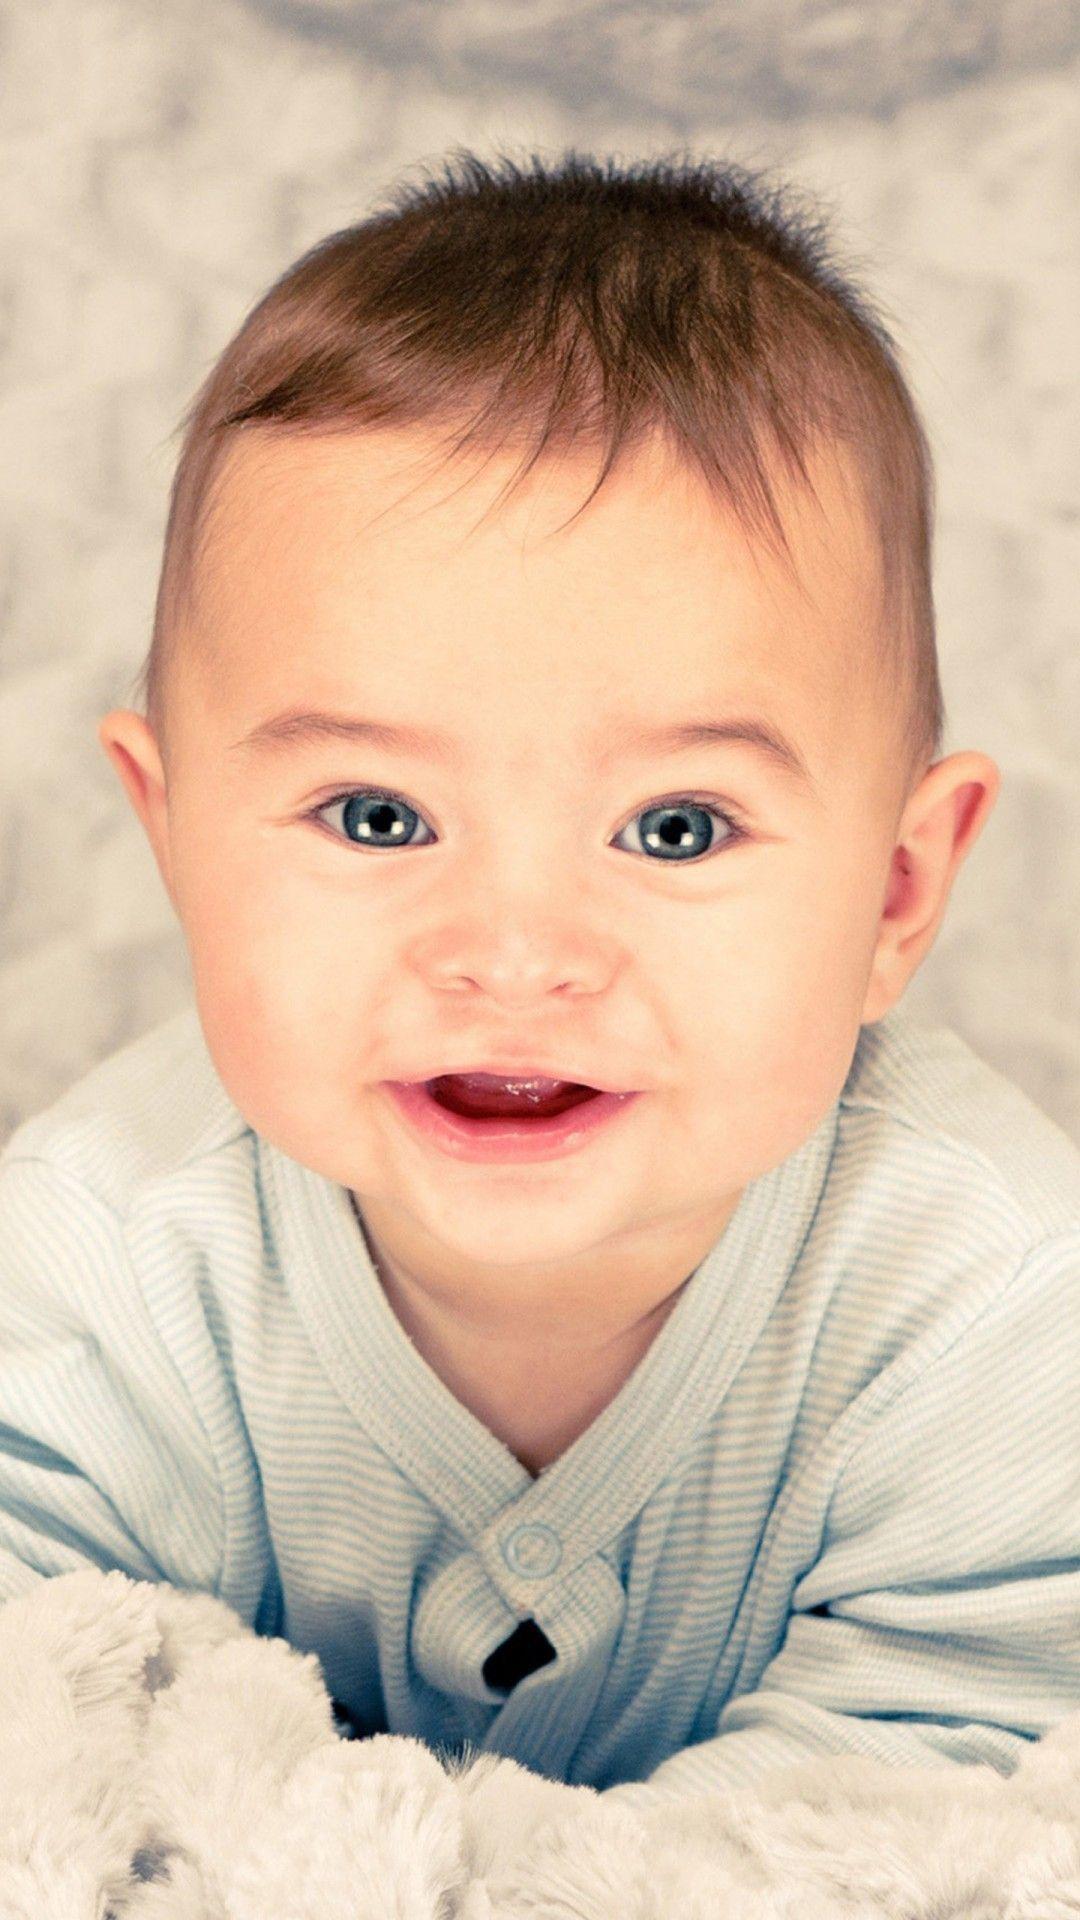 Cute Baby HD desktop wallpaper High Definition Fullscreen